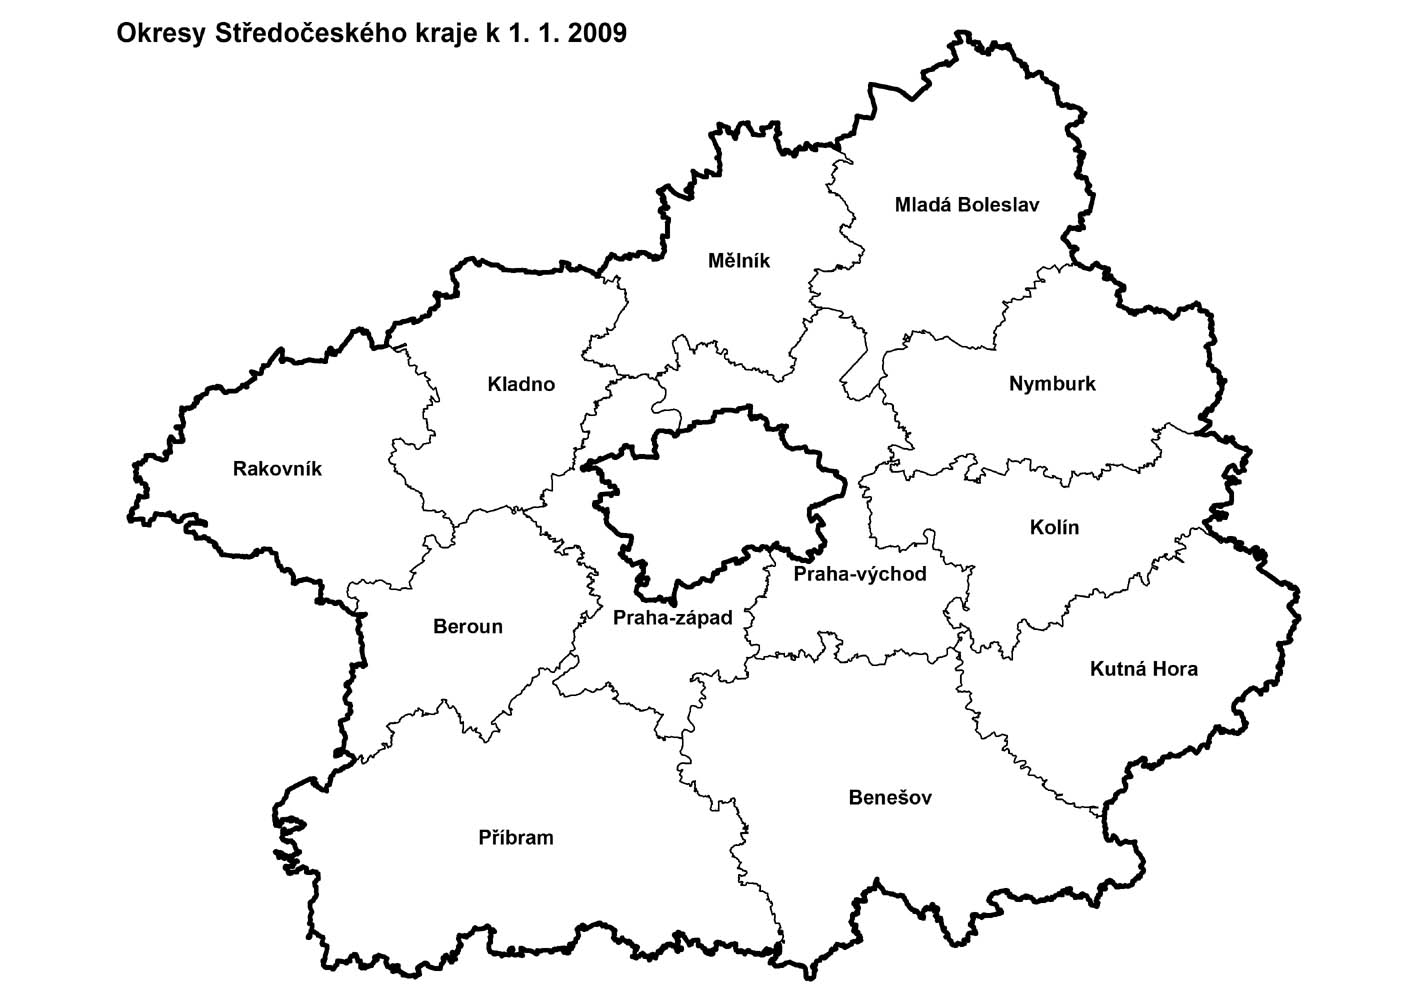 Okresy Středočeského kraje k 1.1.2009